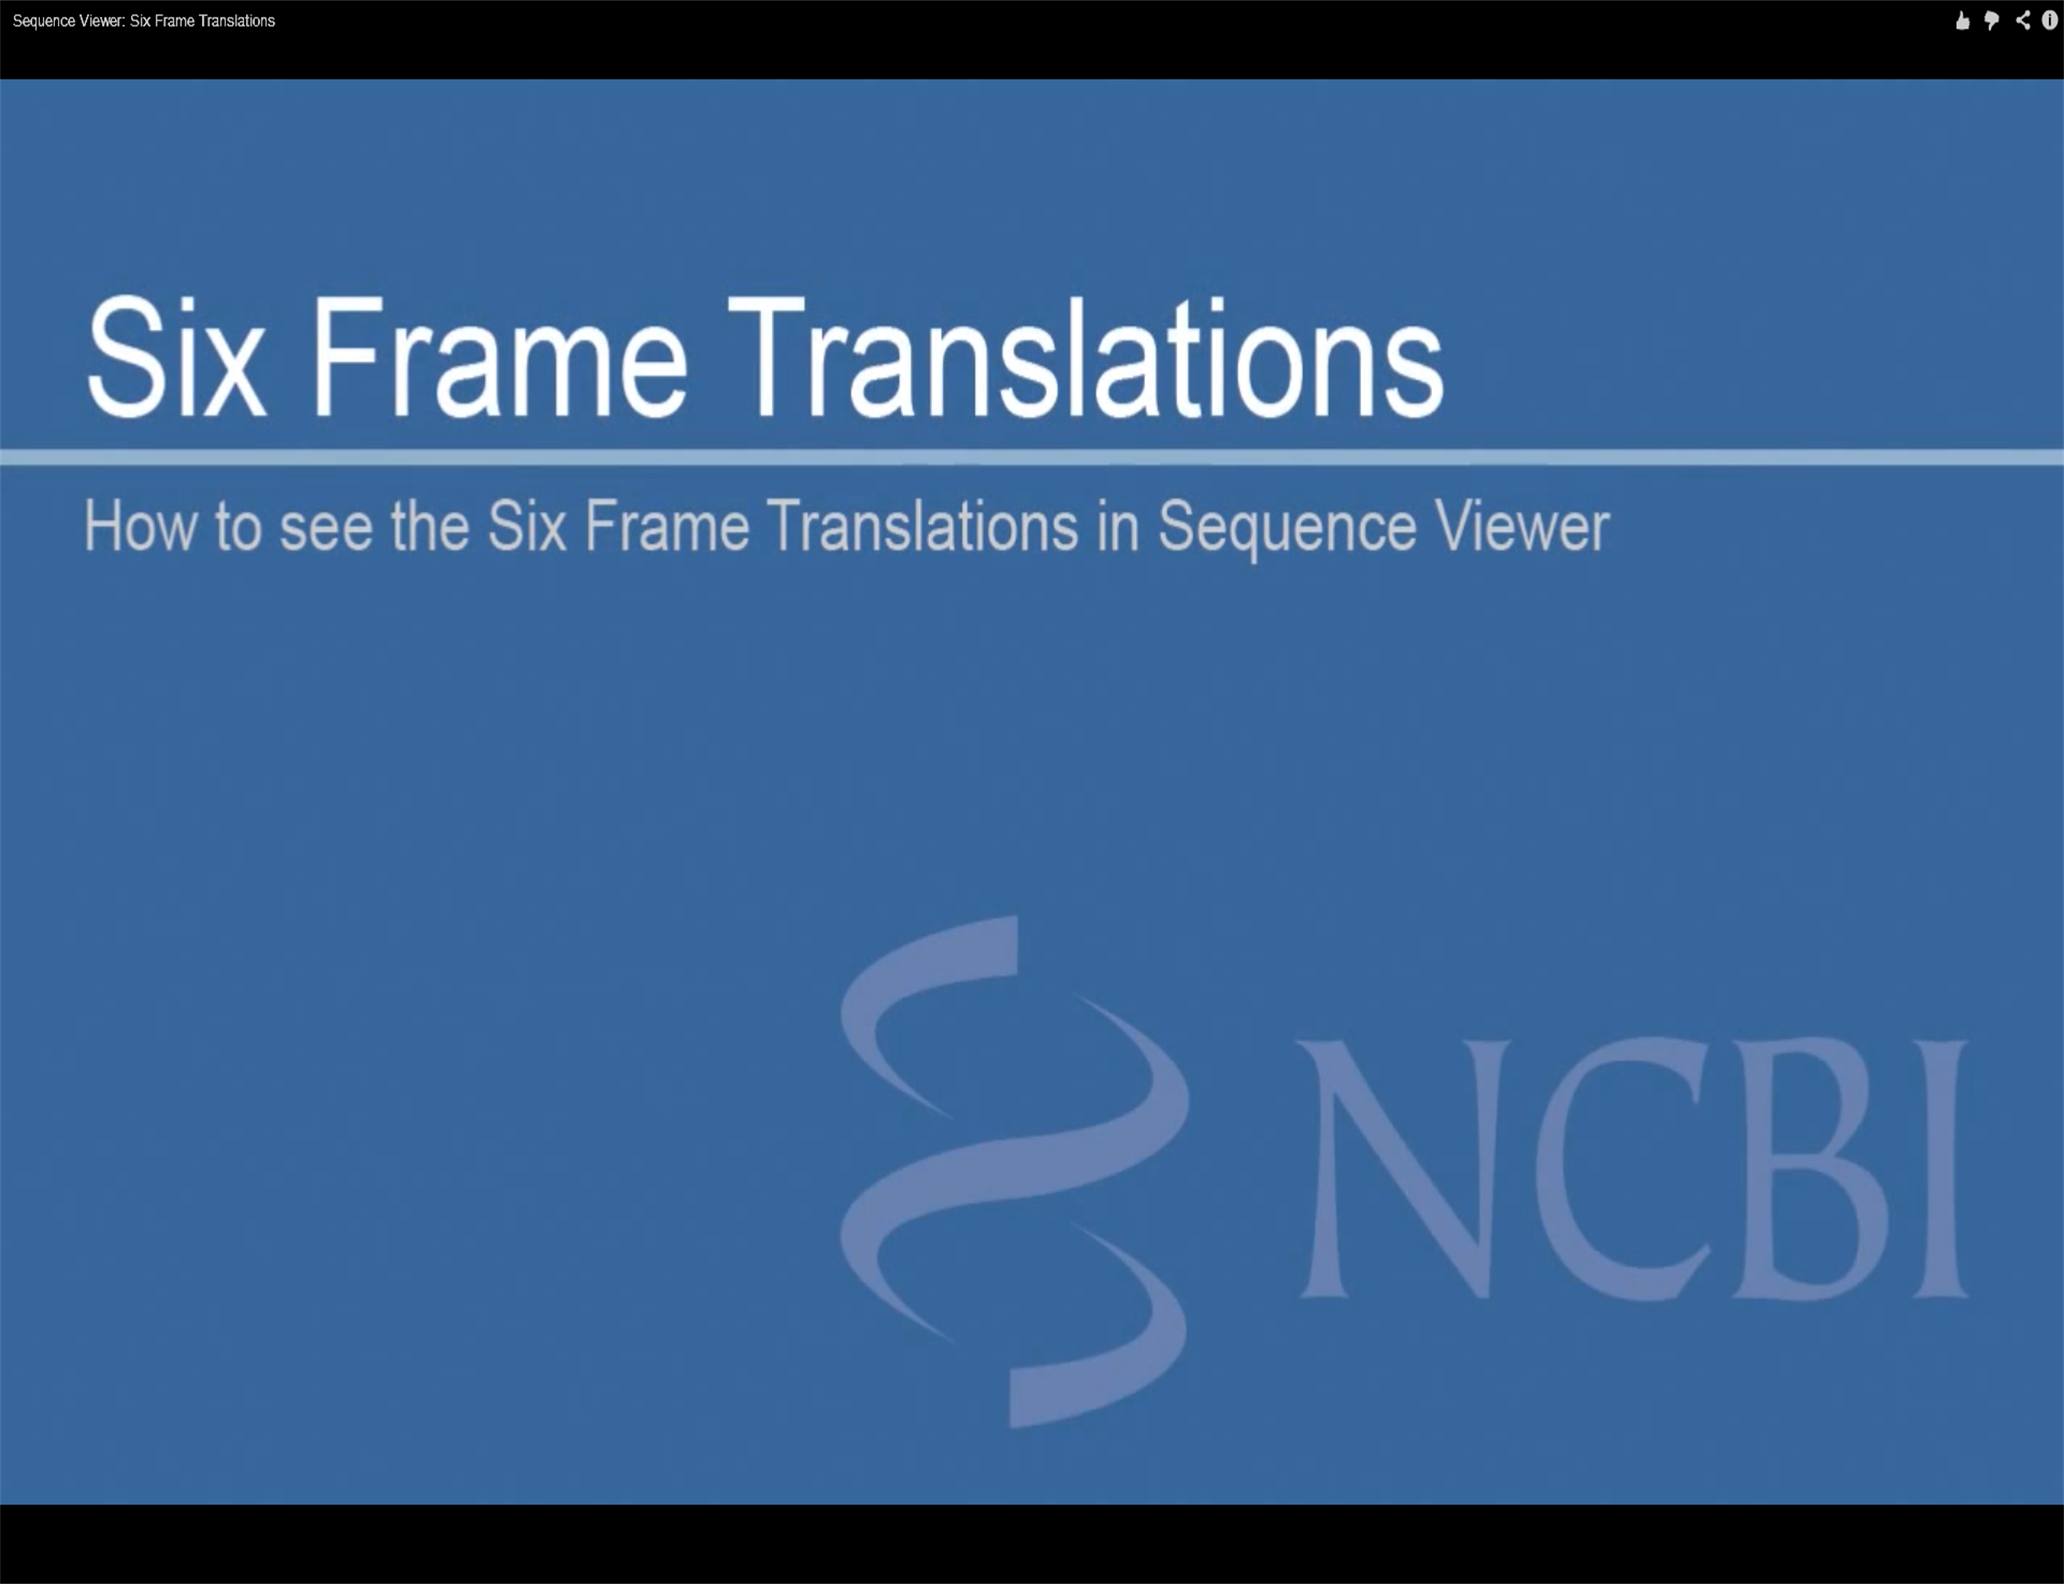 Six Frame Translations